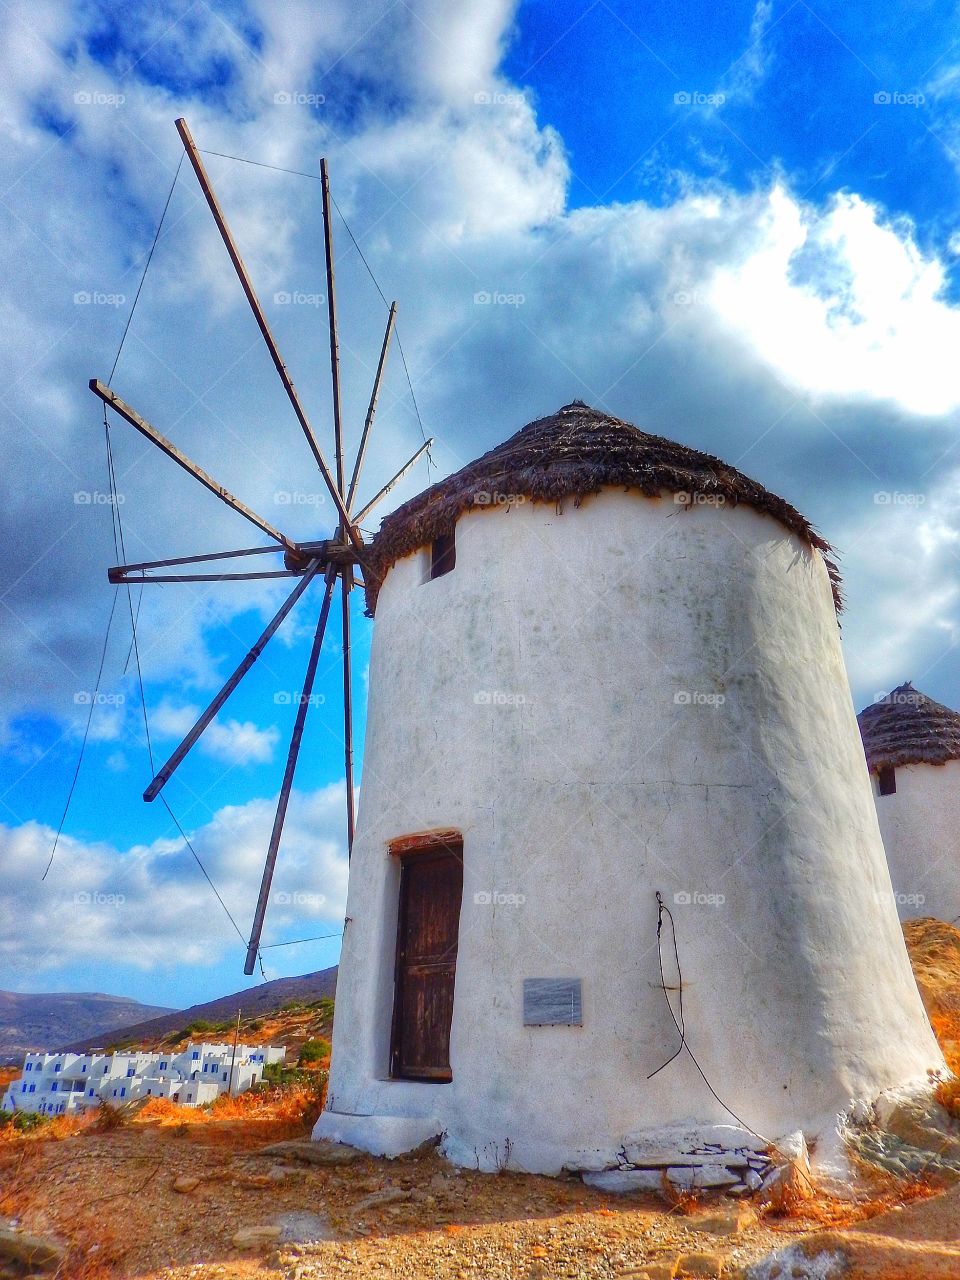 Windmill of Mykonos, Greece